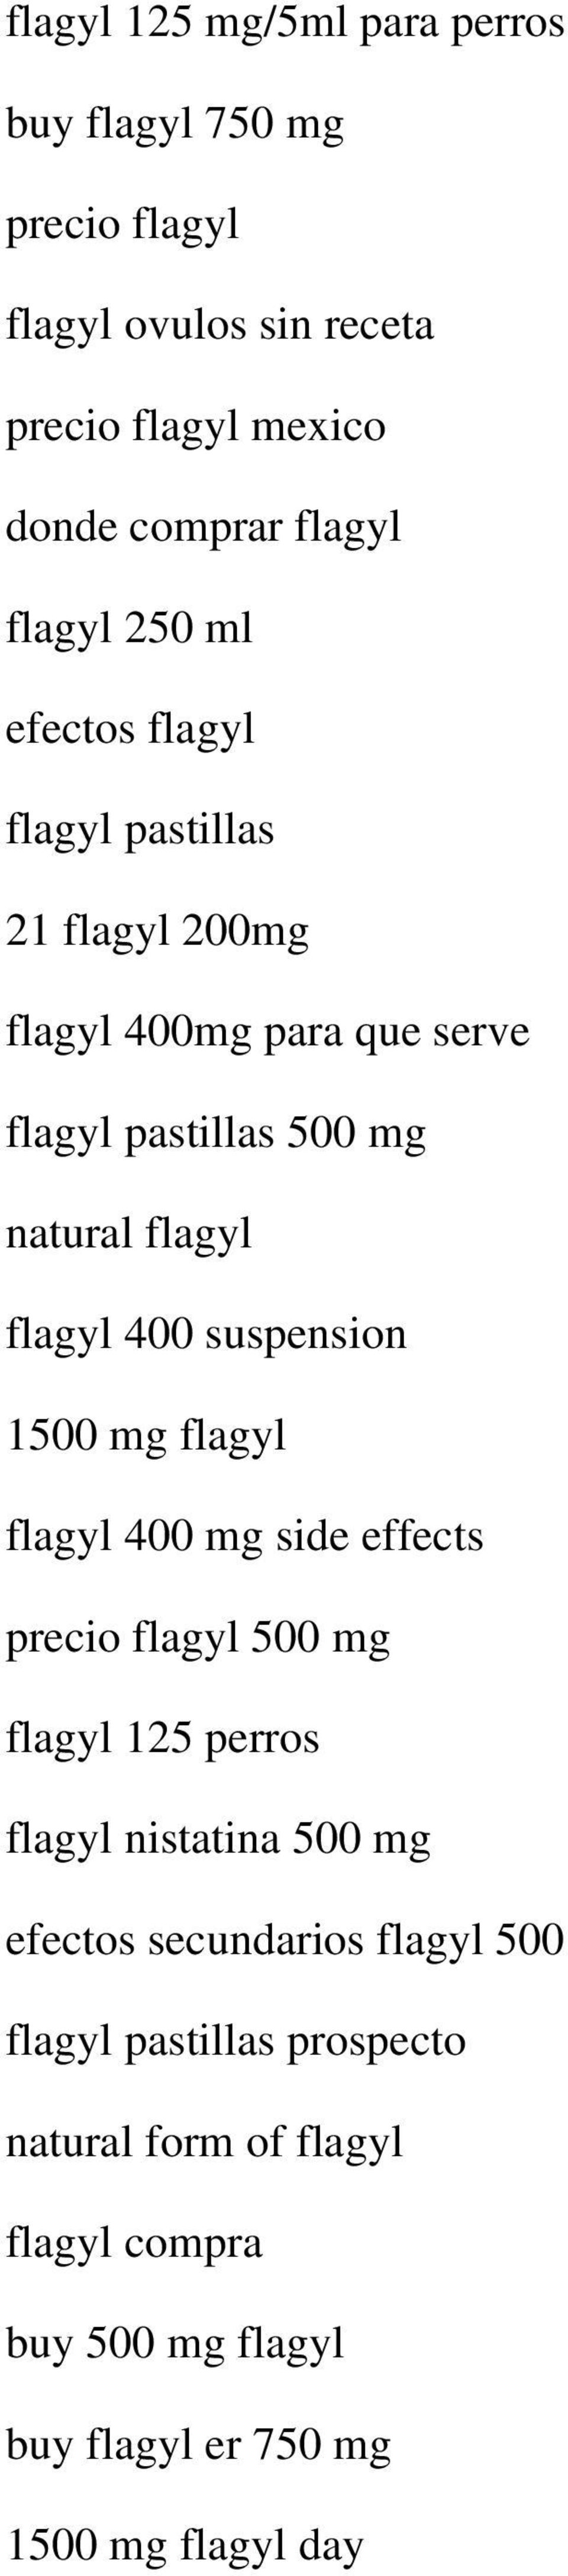 flagyl 400 suspension 1500 mg flagyl flagyl 400 mg side effects precio flagyl 500 mg flagyl 125 perros flagyl nistatina 500 mg efectos